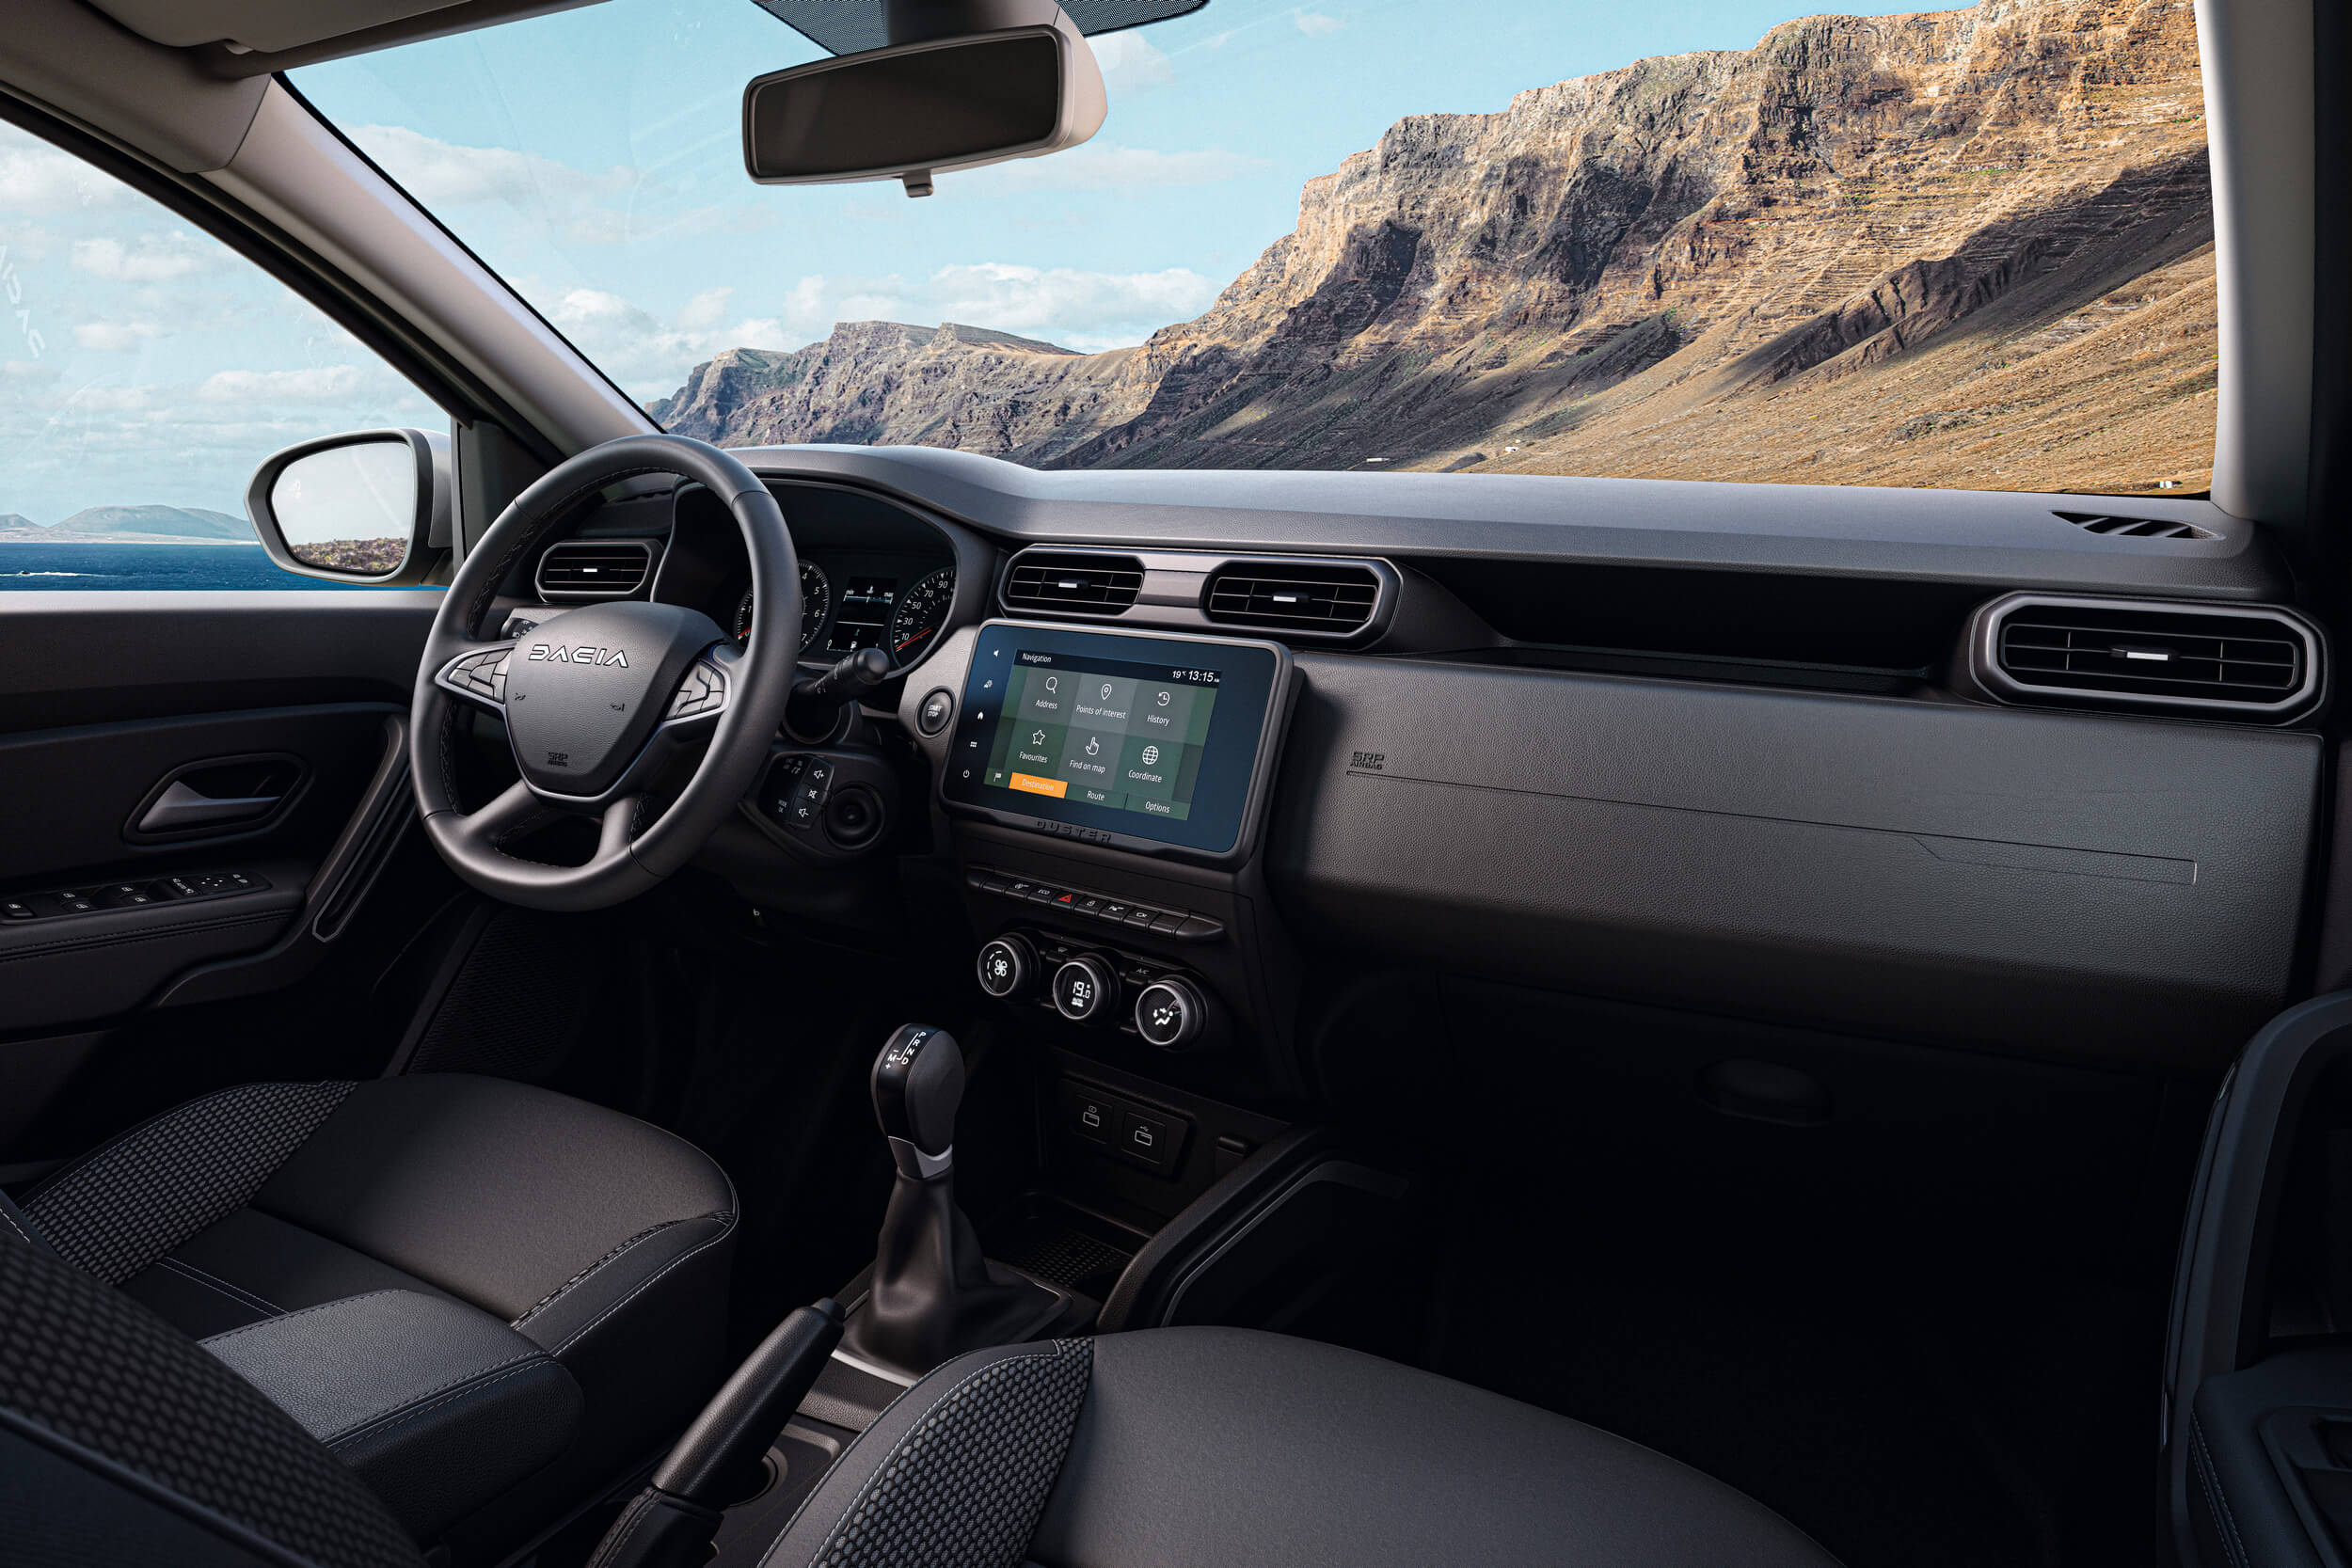 Atnaujintas Dacia Duster visureigio interjeras: matomas vairas, centrinis ekranas ir konsolė, sėdynės ir pavarų perjungimo svirtis